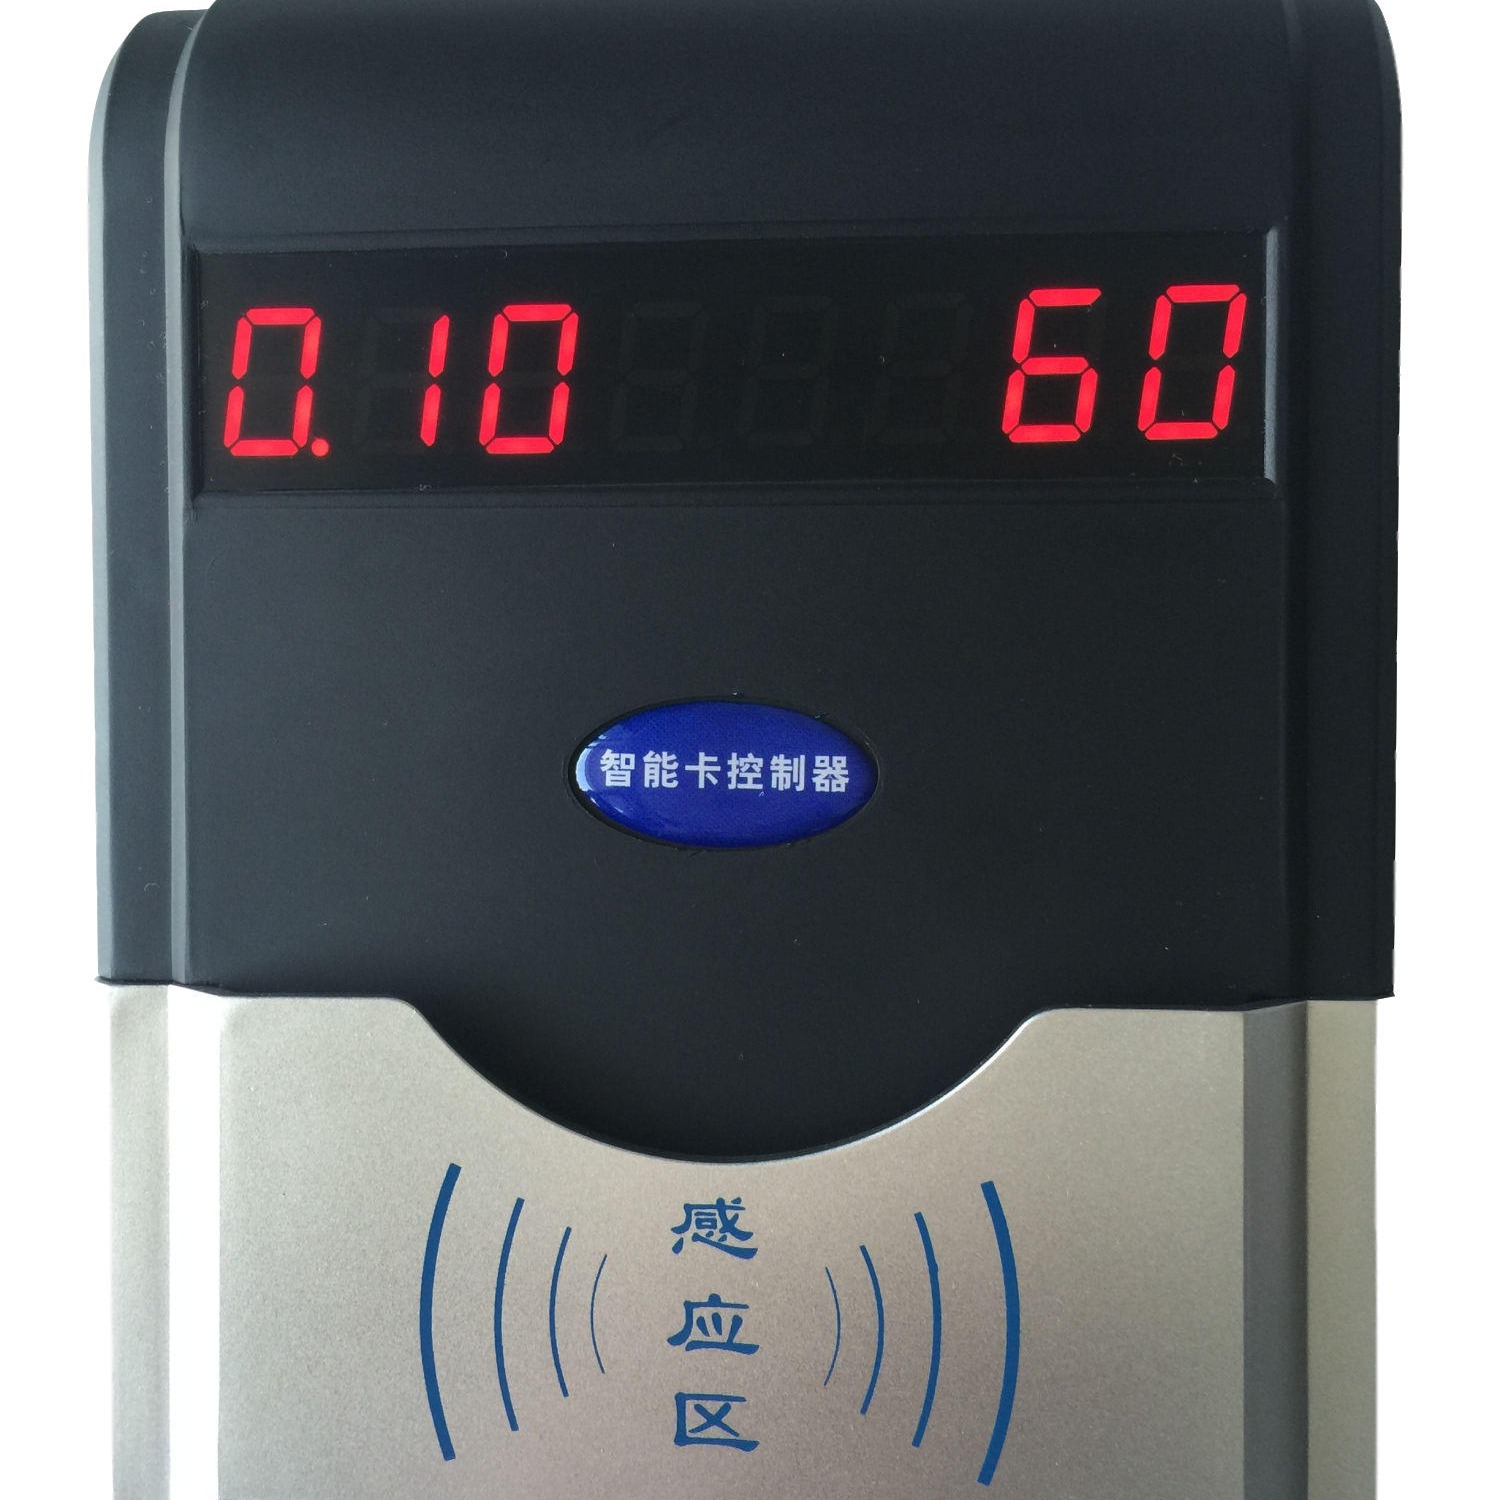 兴天下HF-660IC卡浴室水控机淋浴打卡节水器,洗澡拉卡节水器